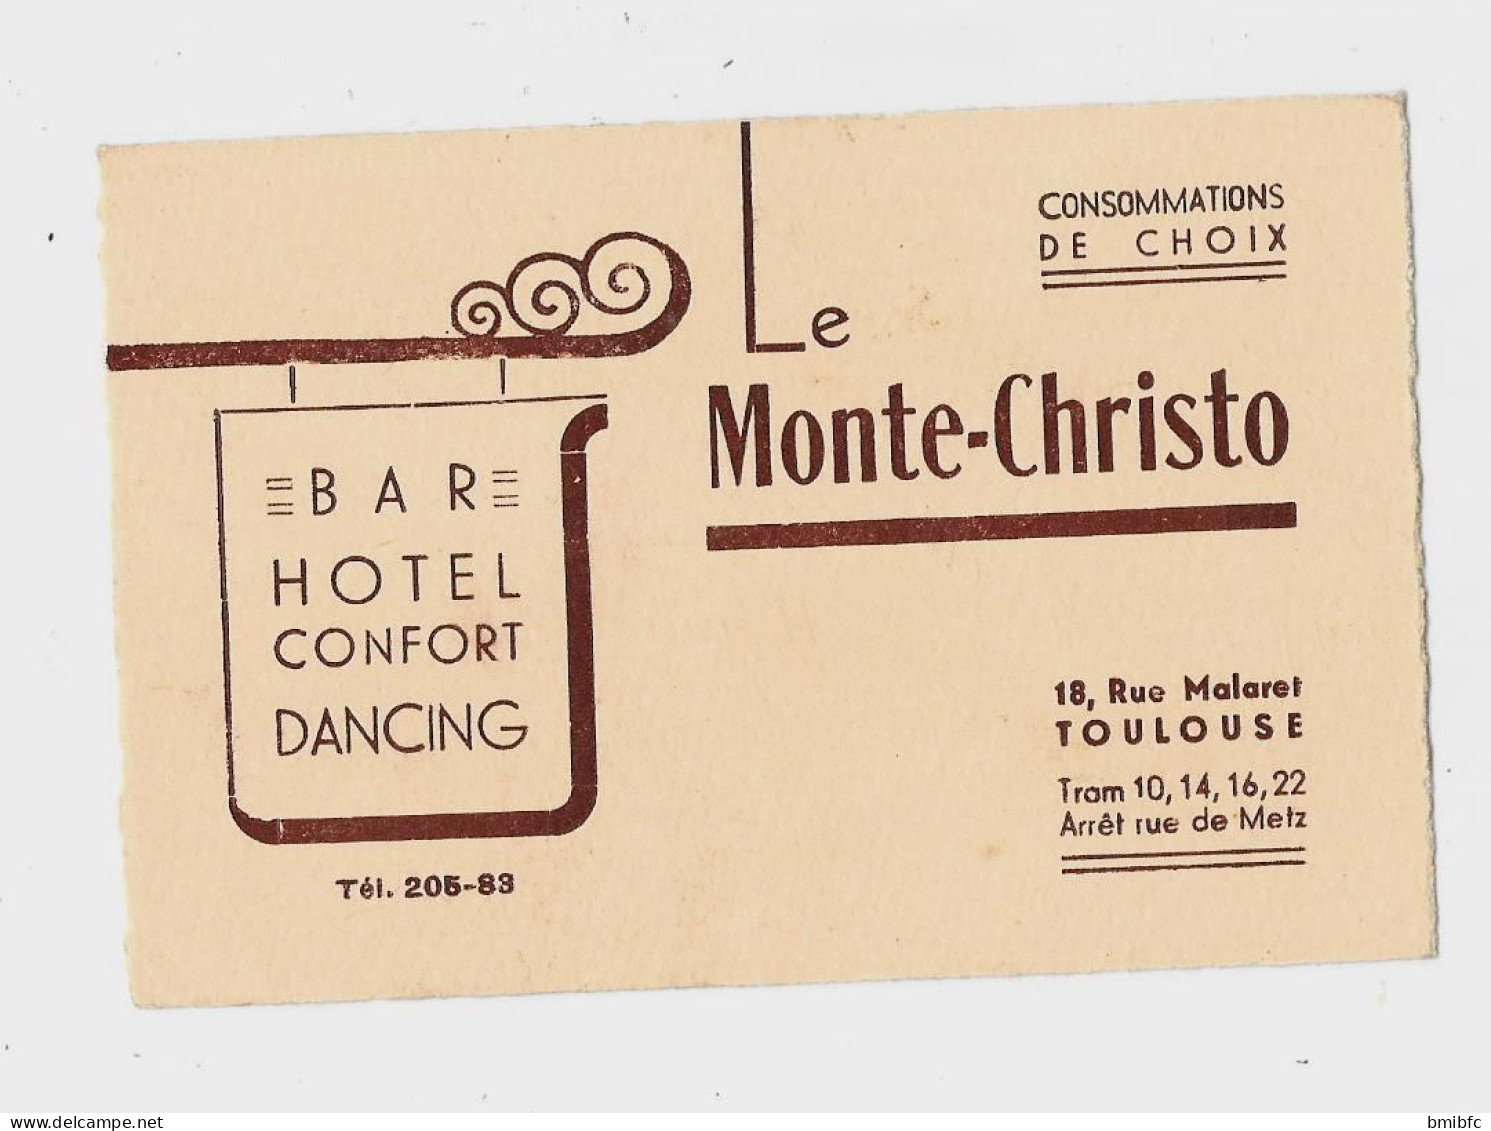 BAR HOTEL CONFORT DANCING Tél  205-83 Le Monte-Christo 18, Rue Malaret TOULOUSE Tram 10,14,16,22 - Cartoncini Da Visita